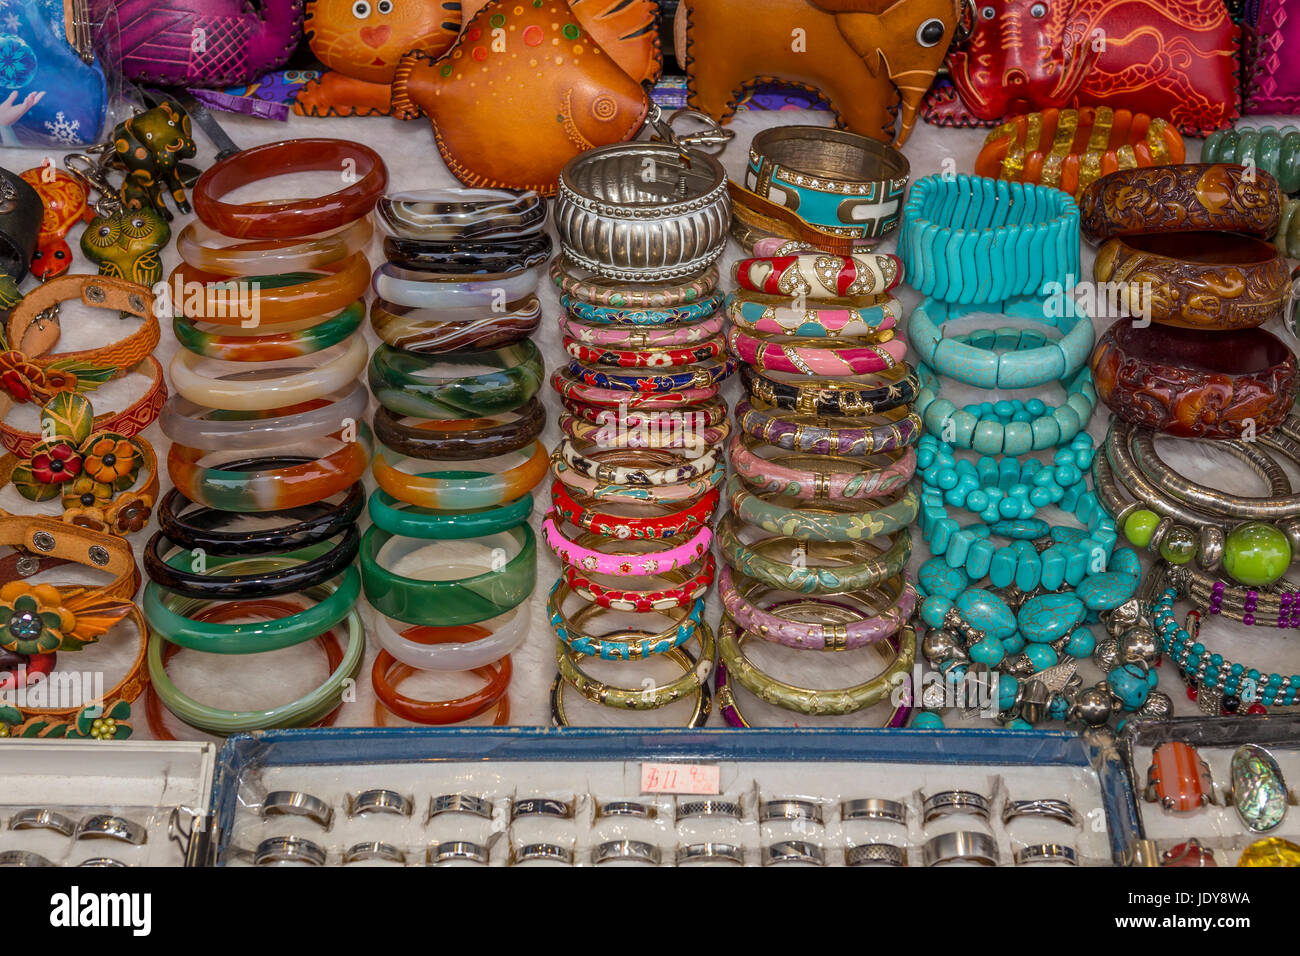 Pulseras de venta, escaparate, tienda de souvenirs, Stockton Street, Chinatown, San Francisco, California, Estados Unidos Foto de stock